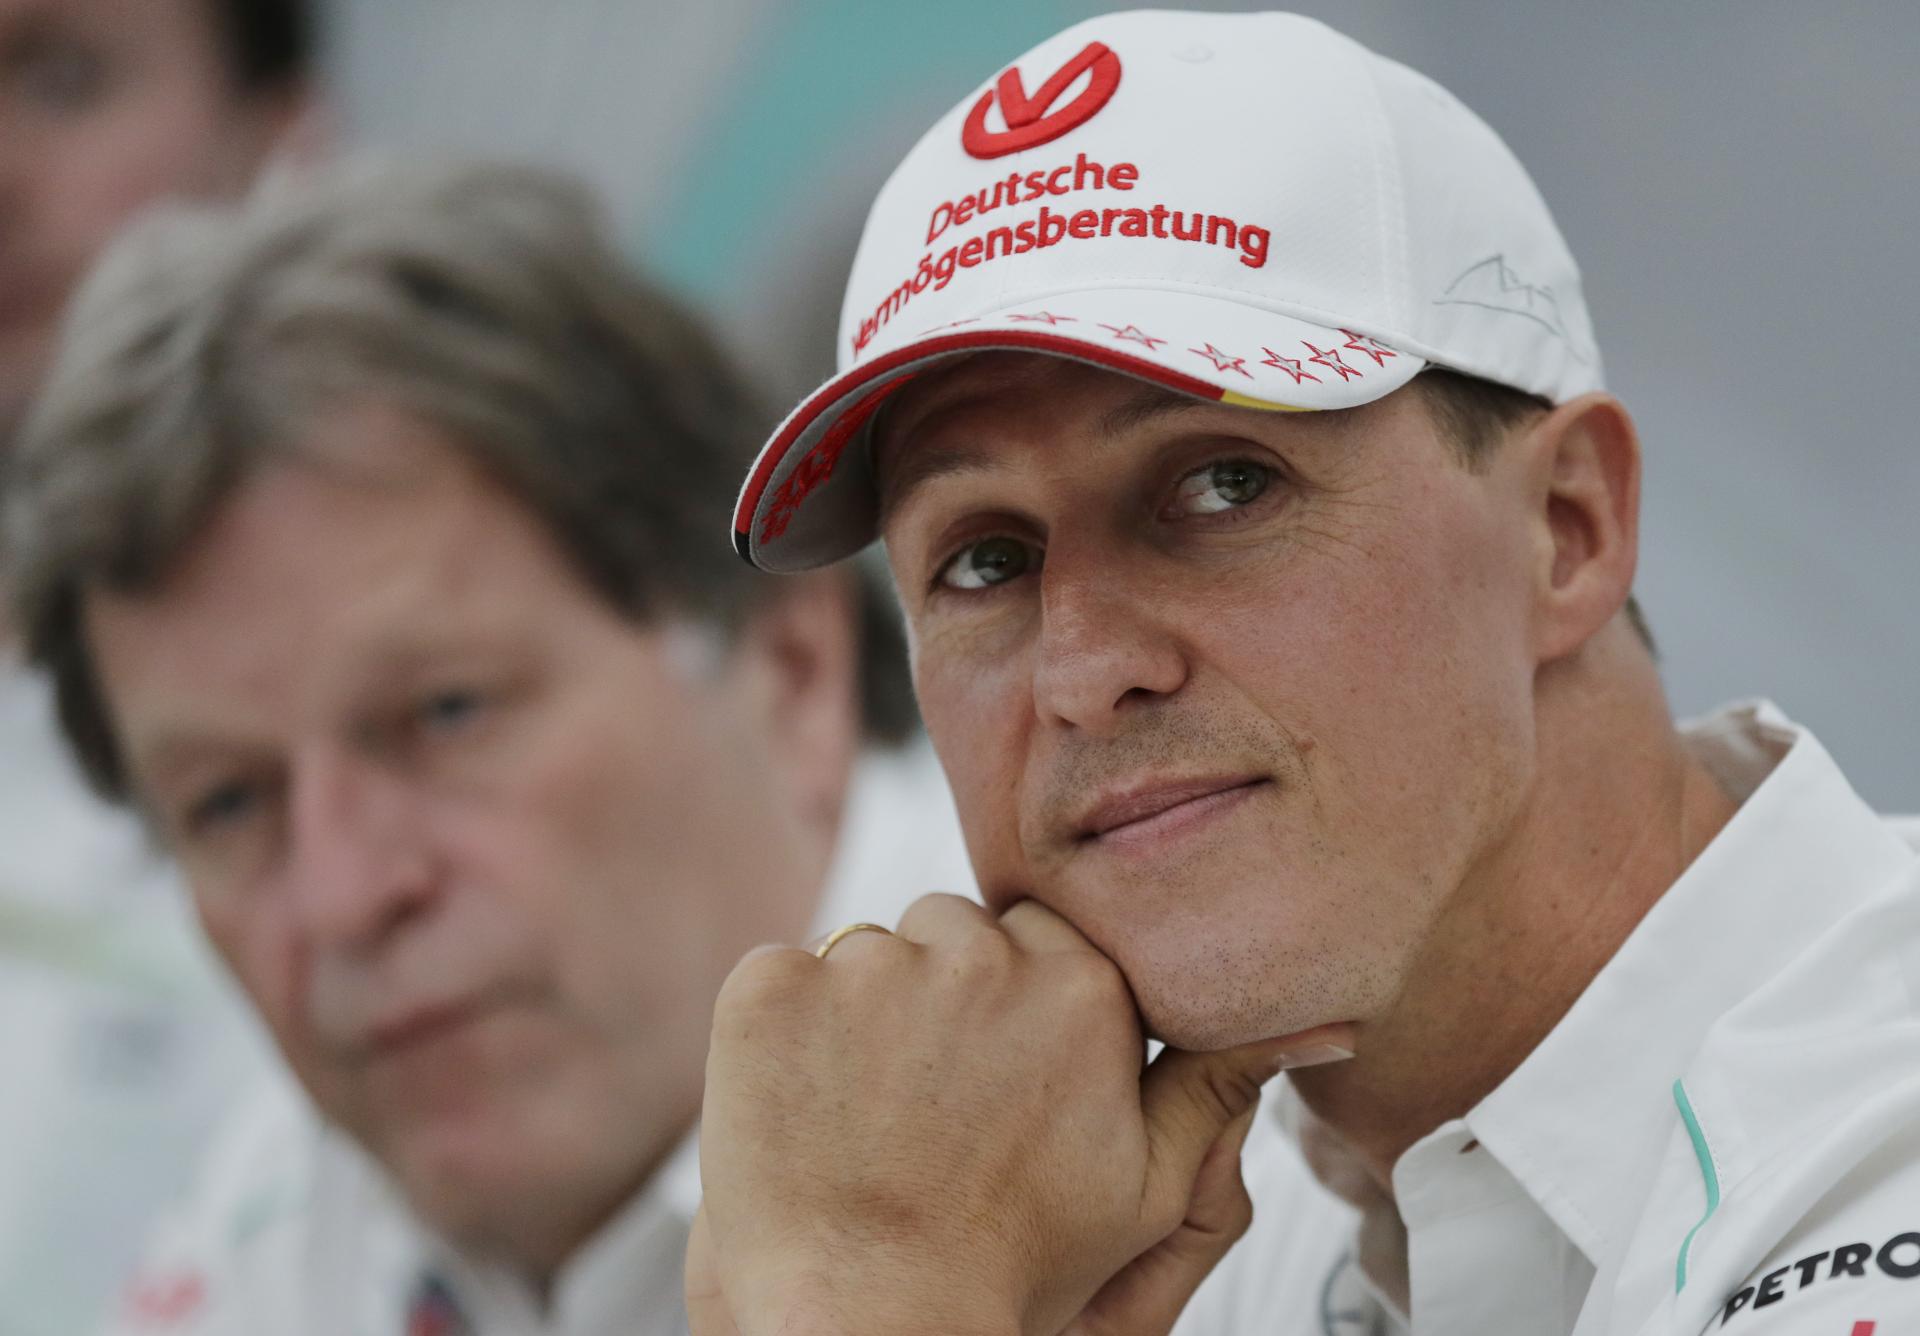 Fiktívny rozhovor umelej inteligencie so Schumacherom viedol v Nemecku k odvolaniu šéfredaktorky